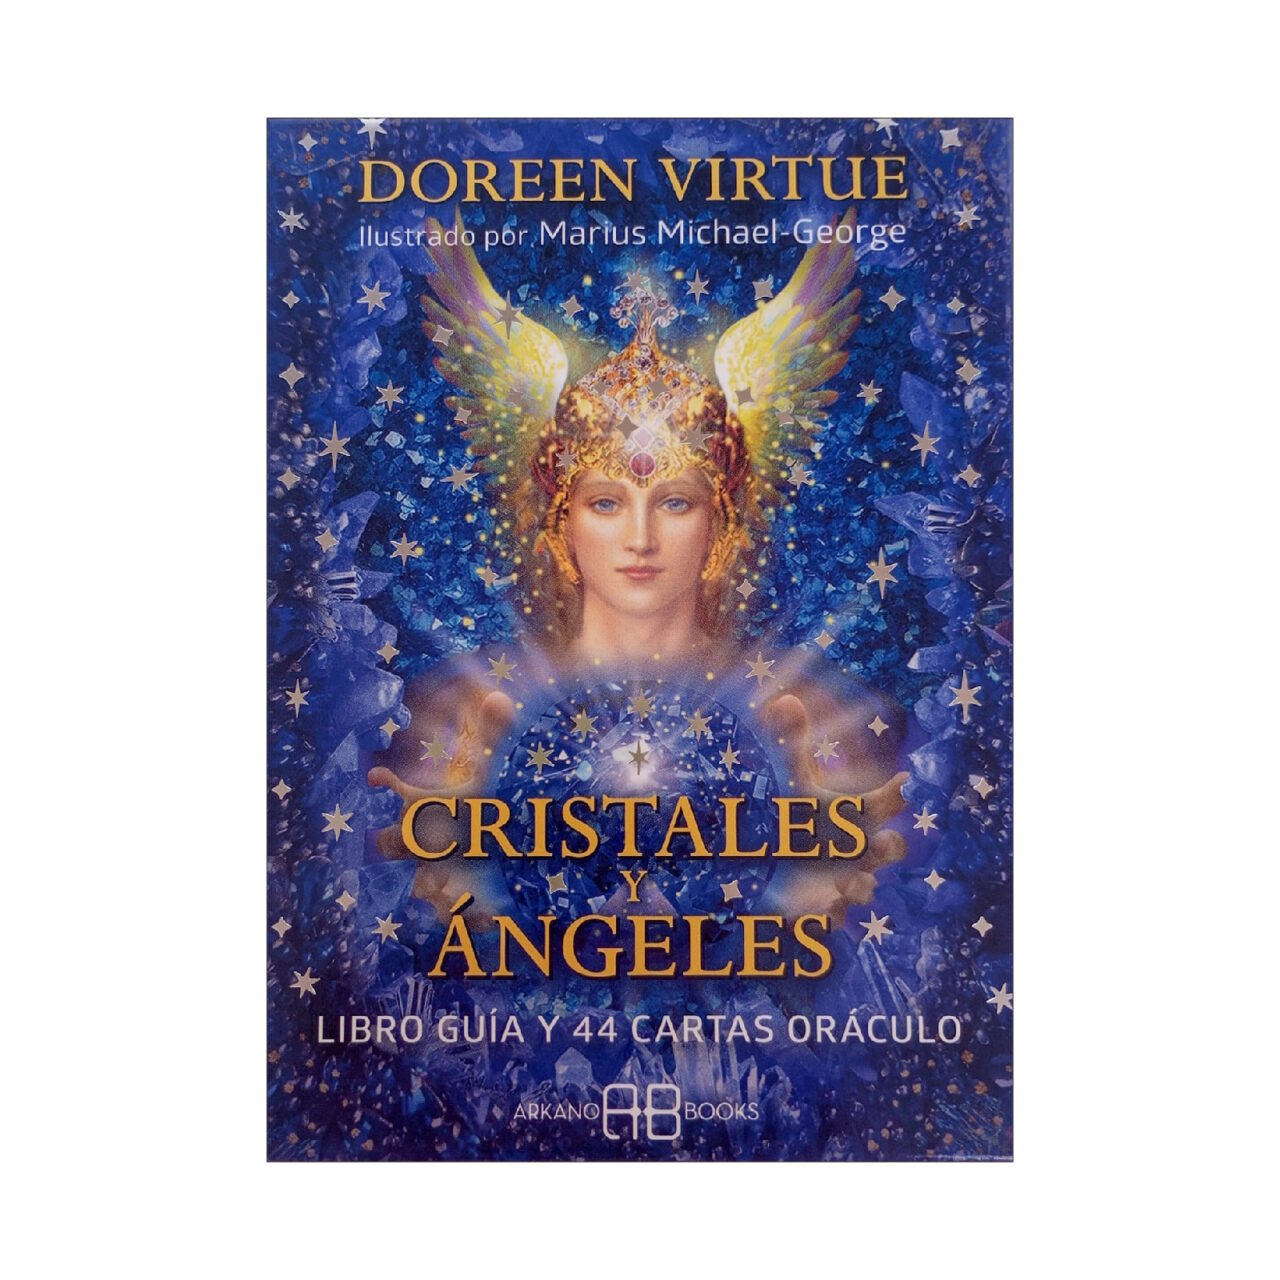 cristales y angeles Fondos producto FB 47